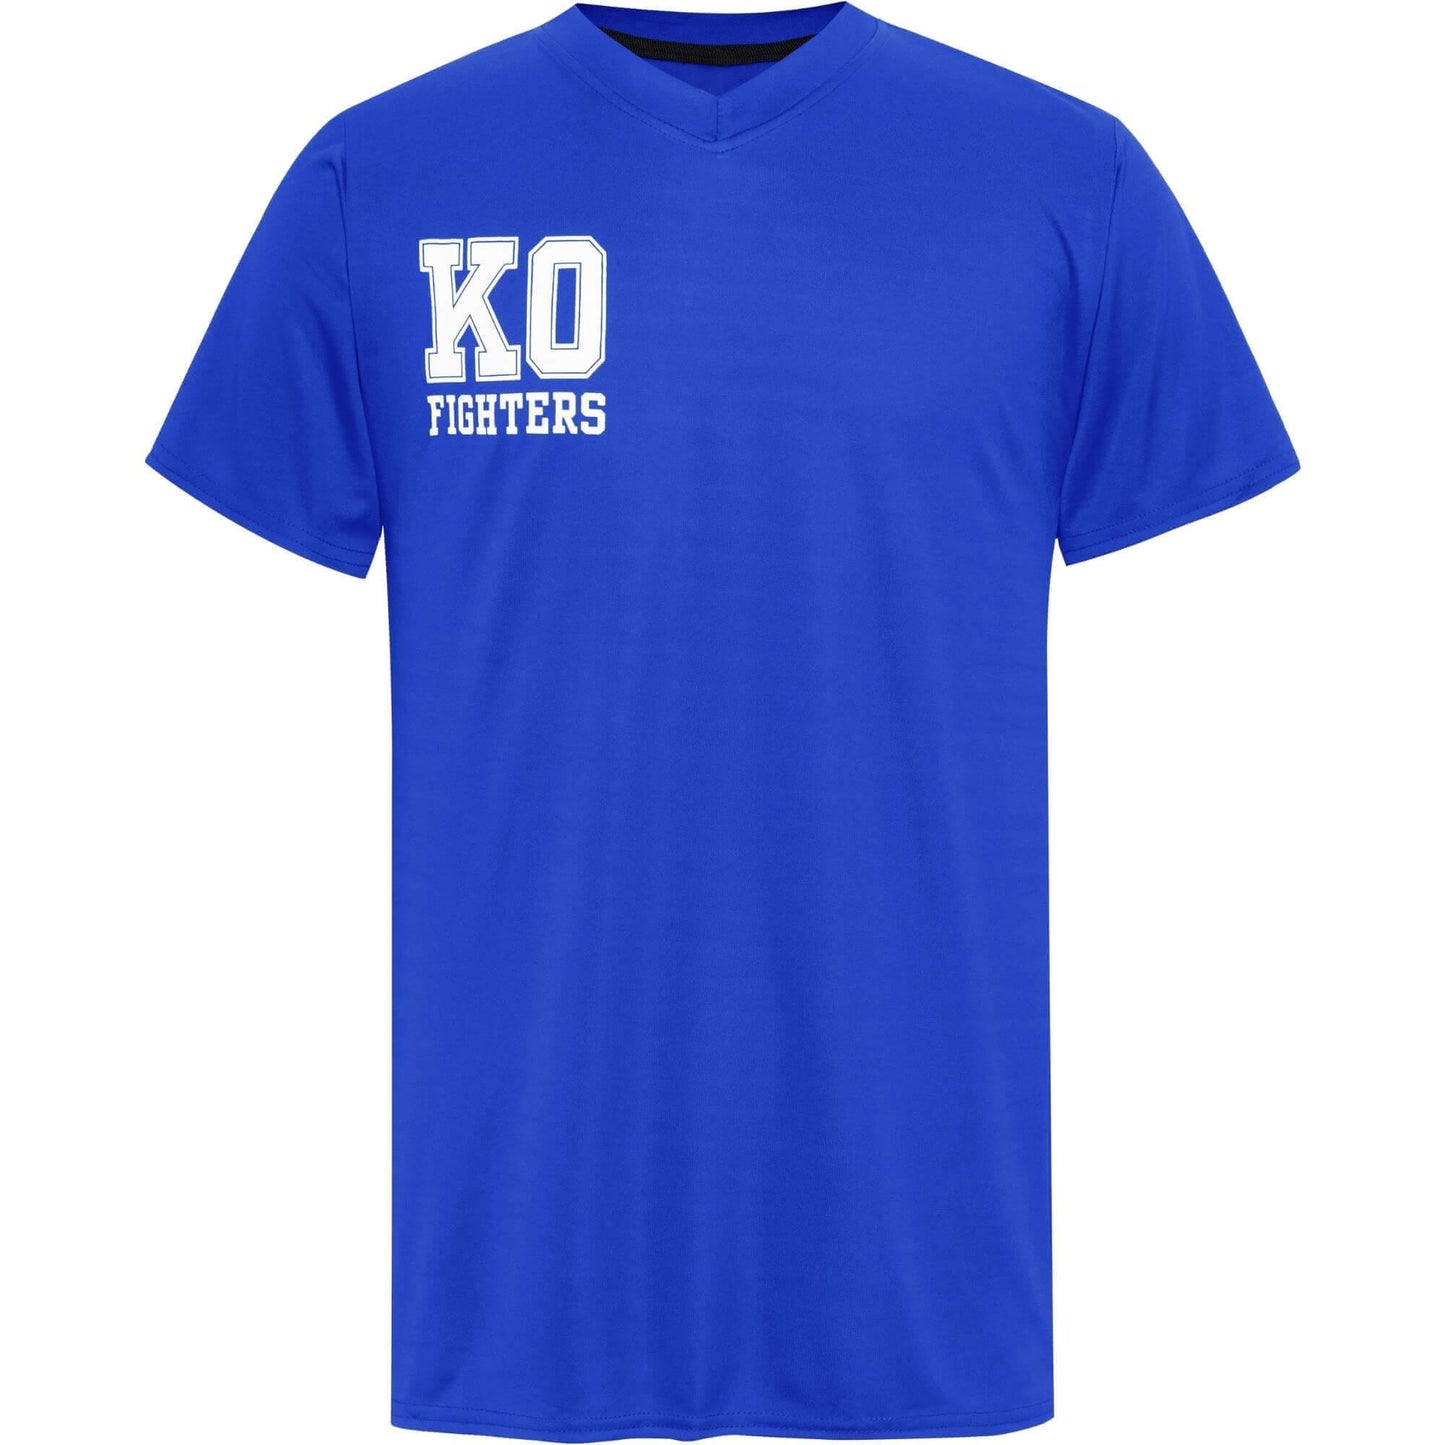 T shirt Blauw - kofighters